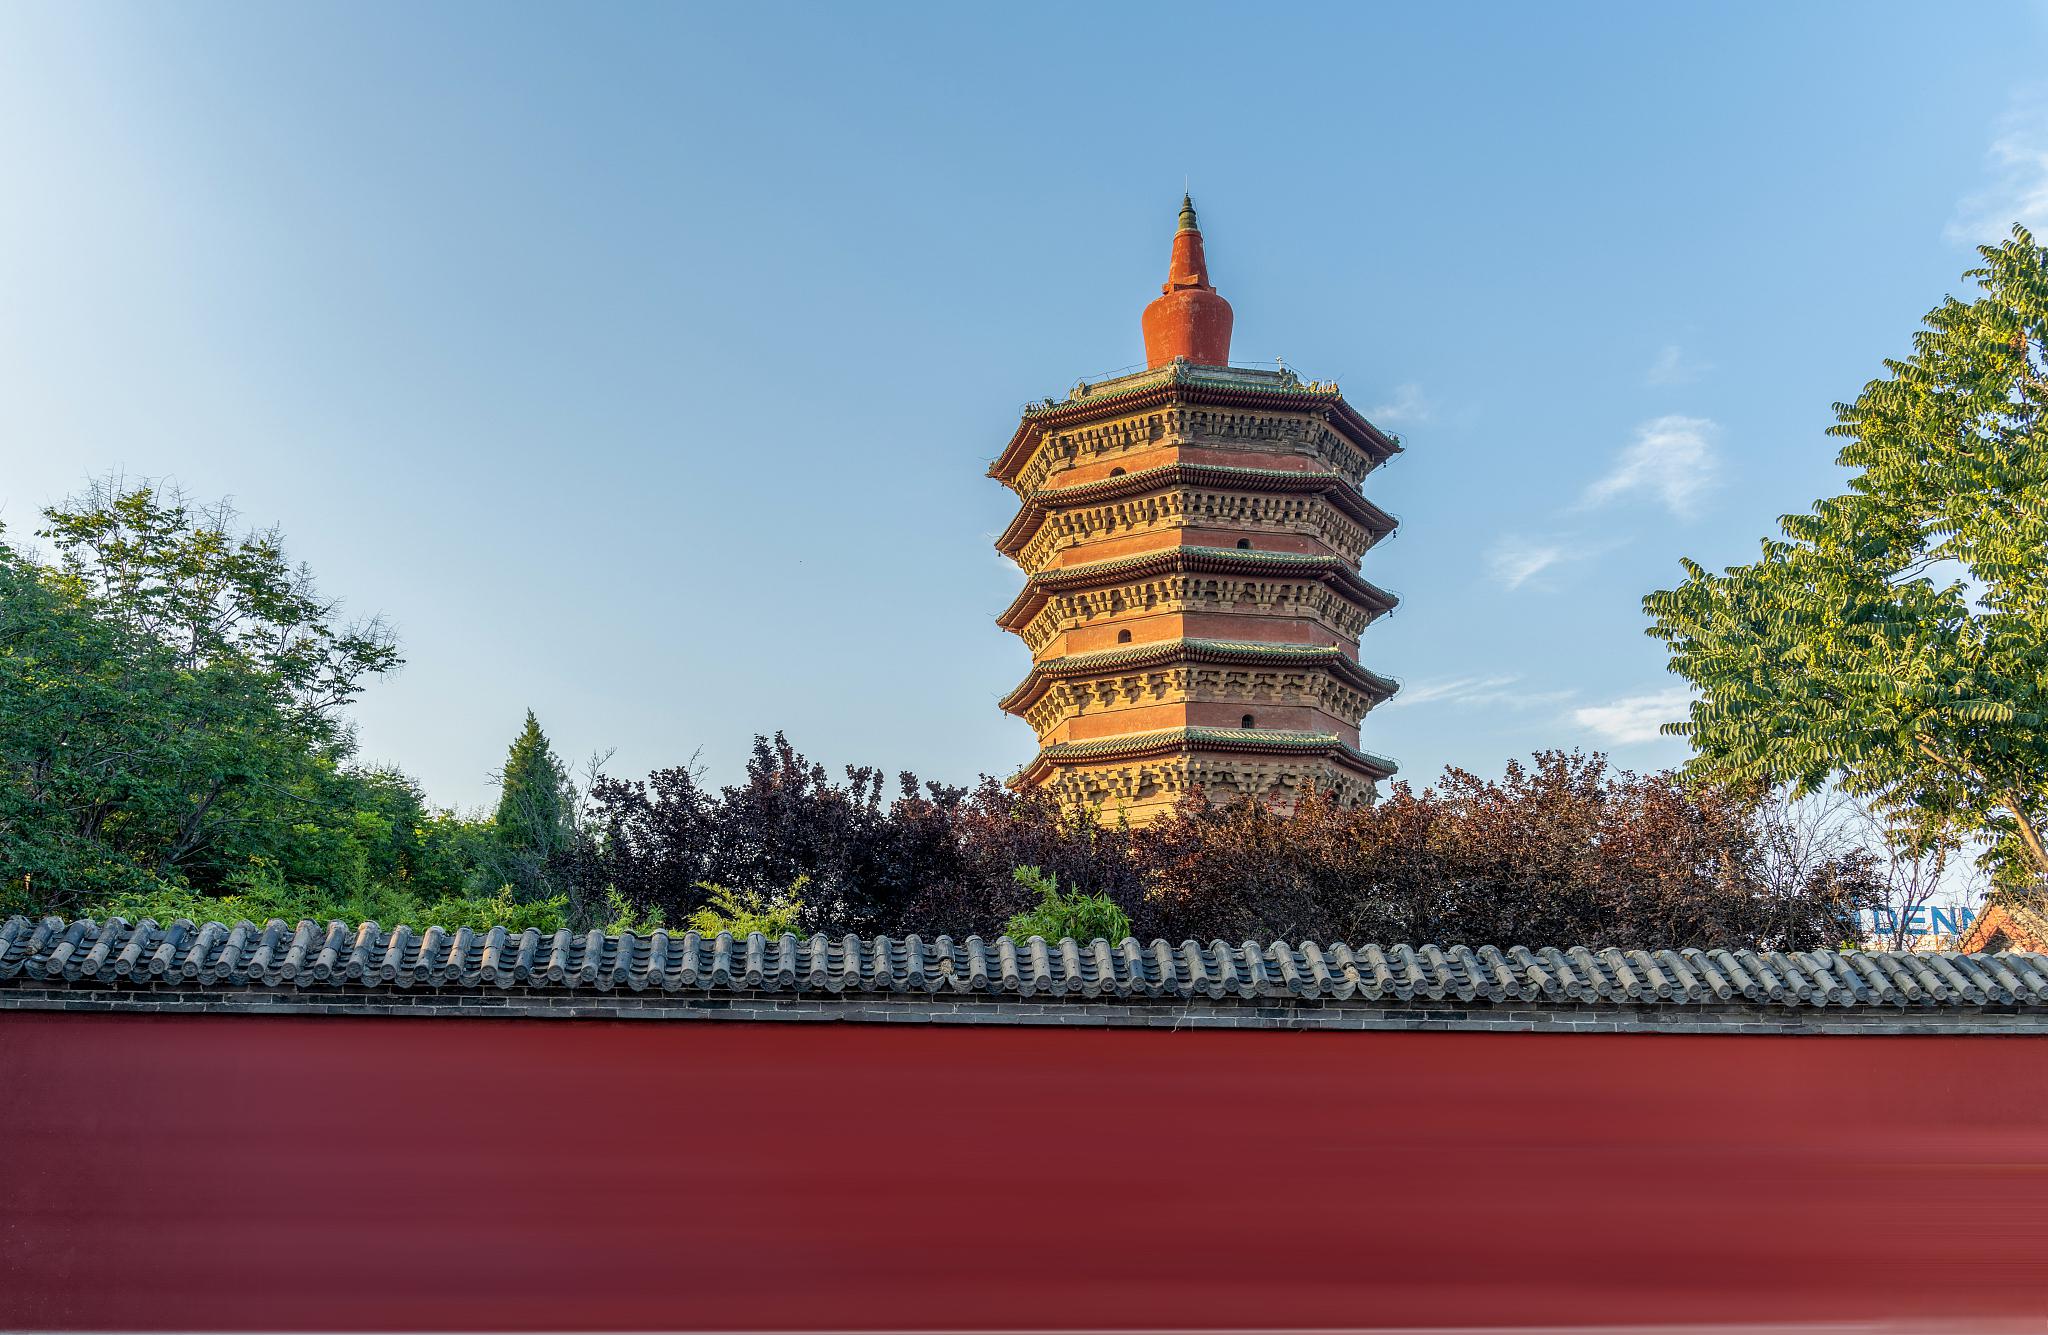 河南是一个历史悠久,文化灿烂的省份,拥有许多著名的景点和旅游胜地